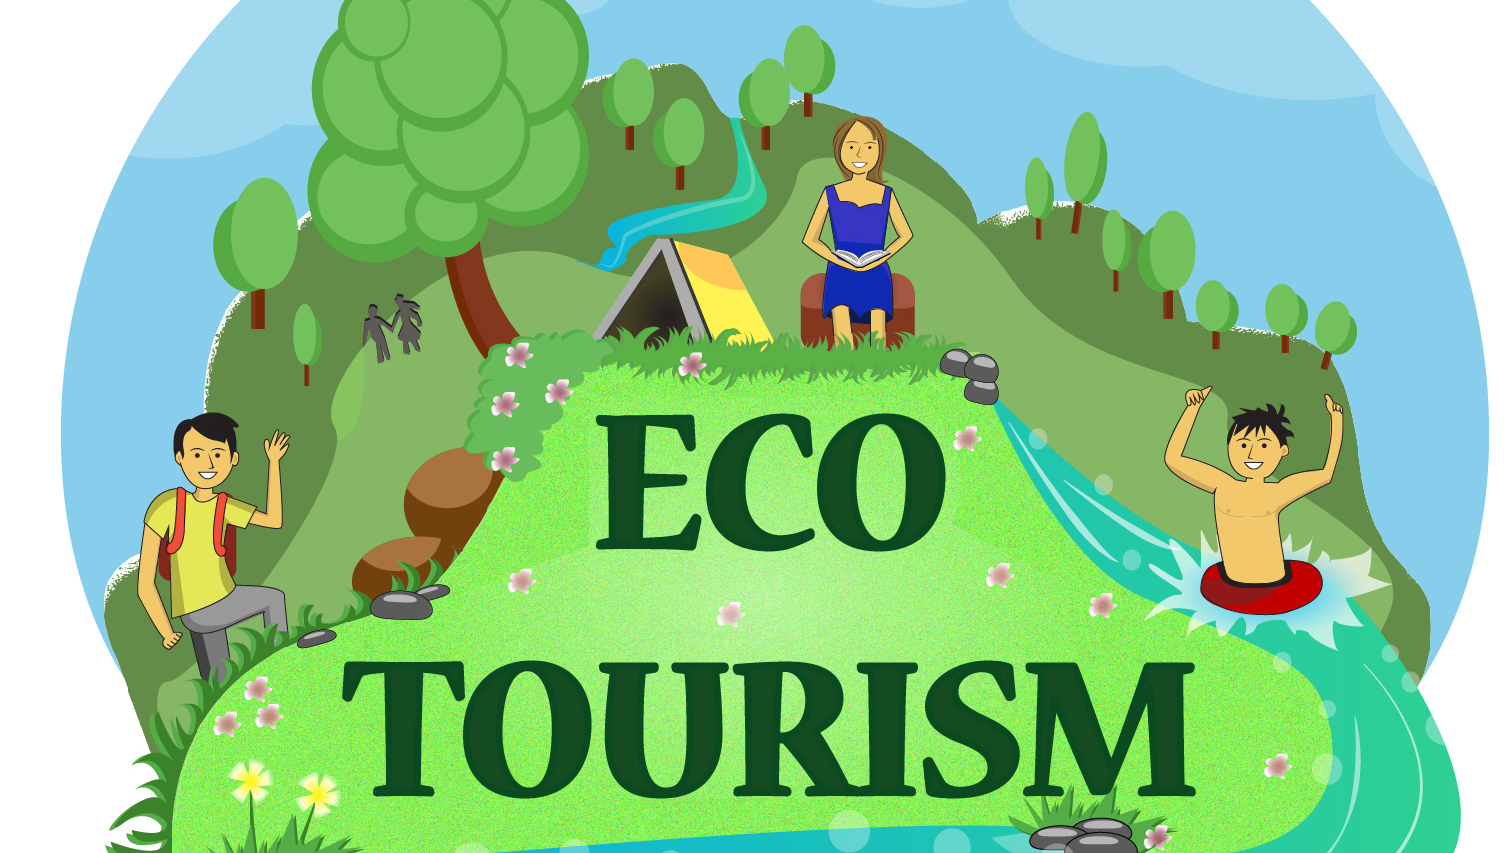 CES Eco Tourism